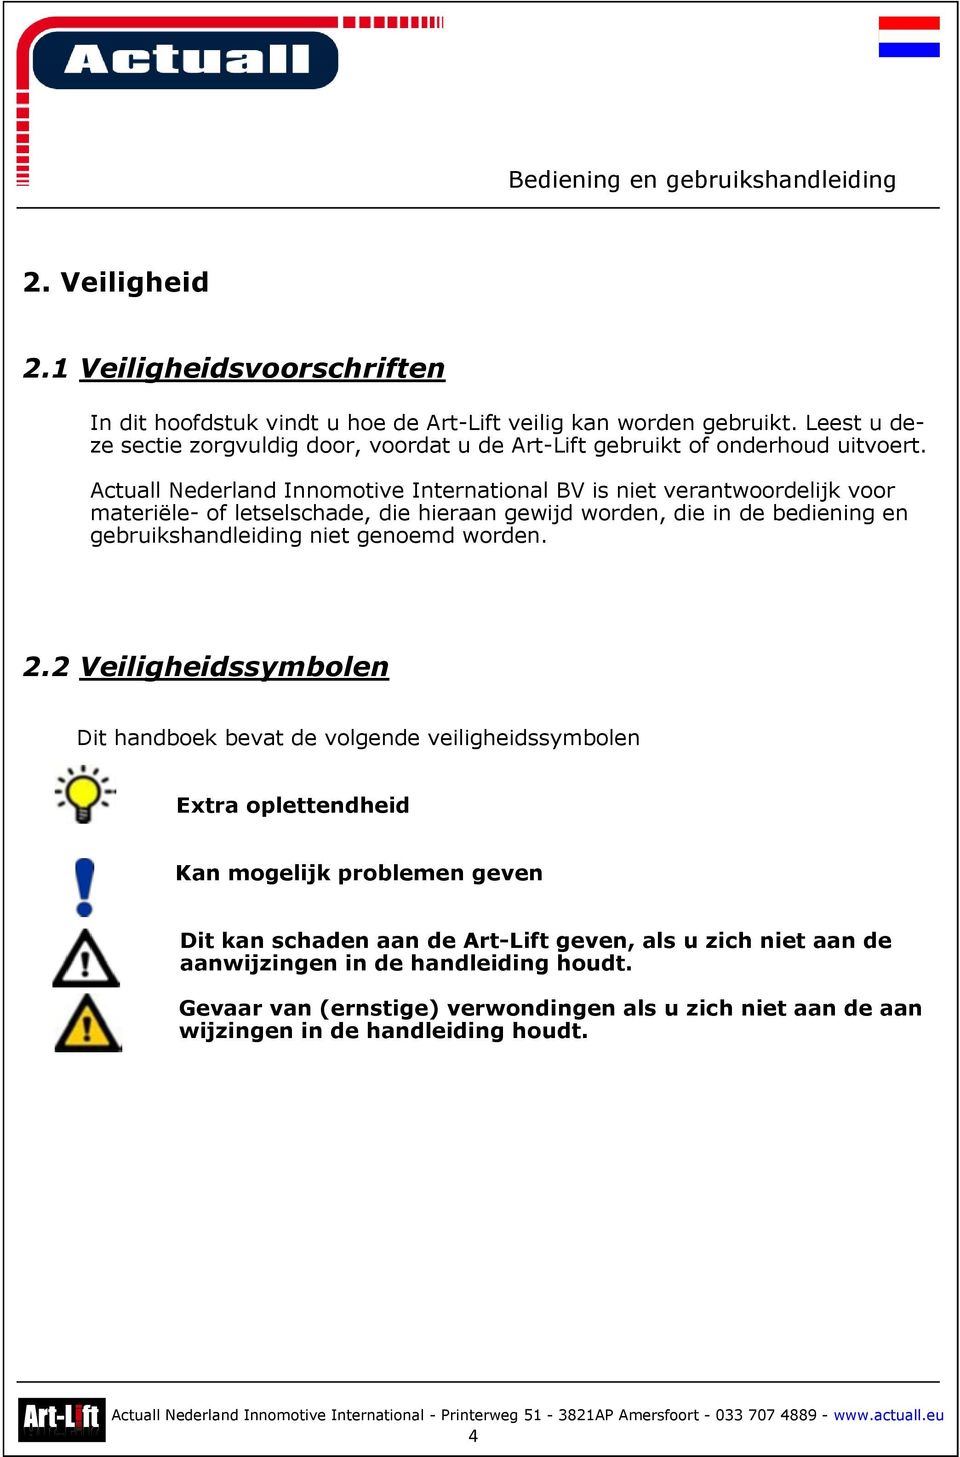 Actuall Nederland Innomotive International BV is niet verantwoordelijk voor materiële- of letselschade, die hieraan gewijd worden, die in de bediening en gebruikshandleiding niet